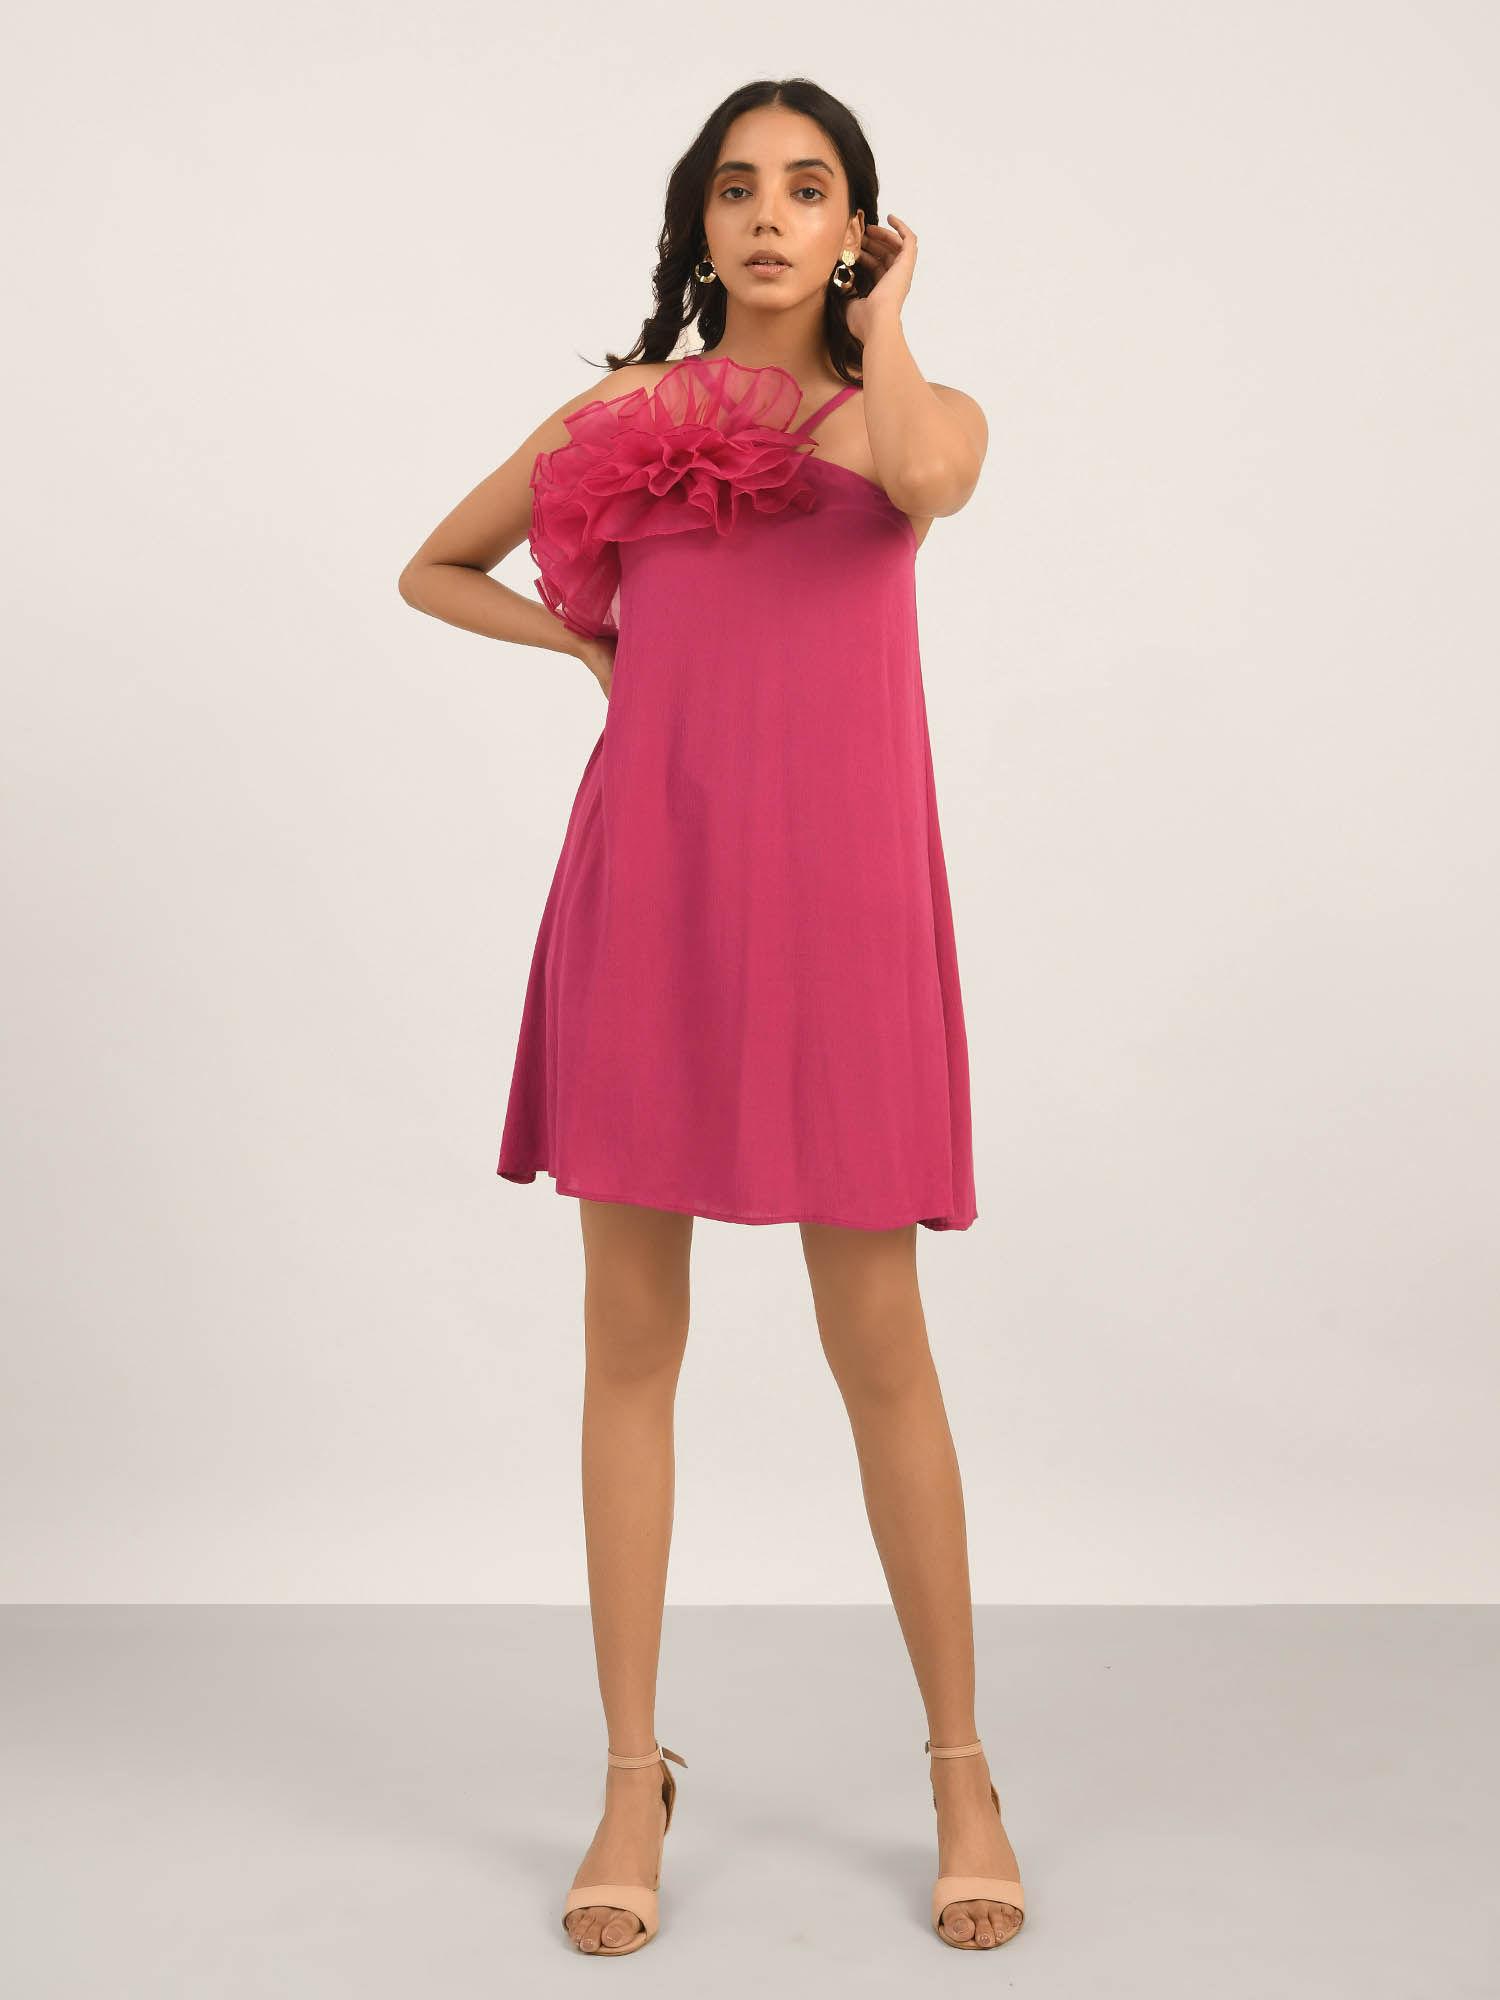 luxury-vacay-hot-pink-a-line-ruffle-dress